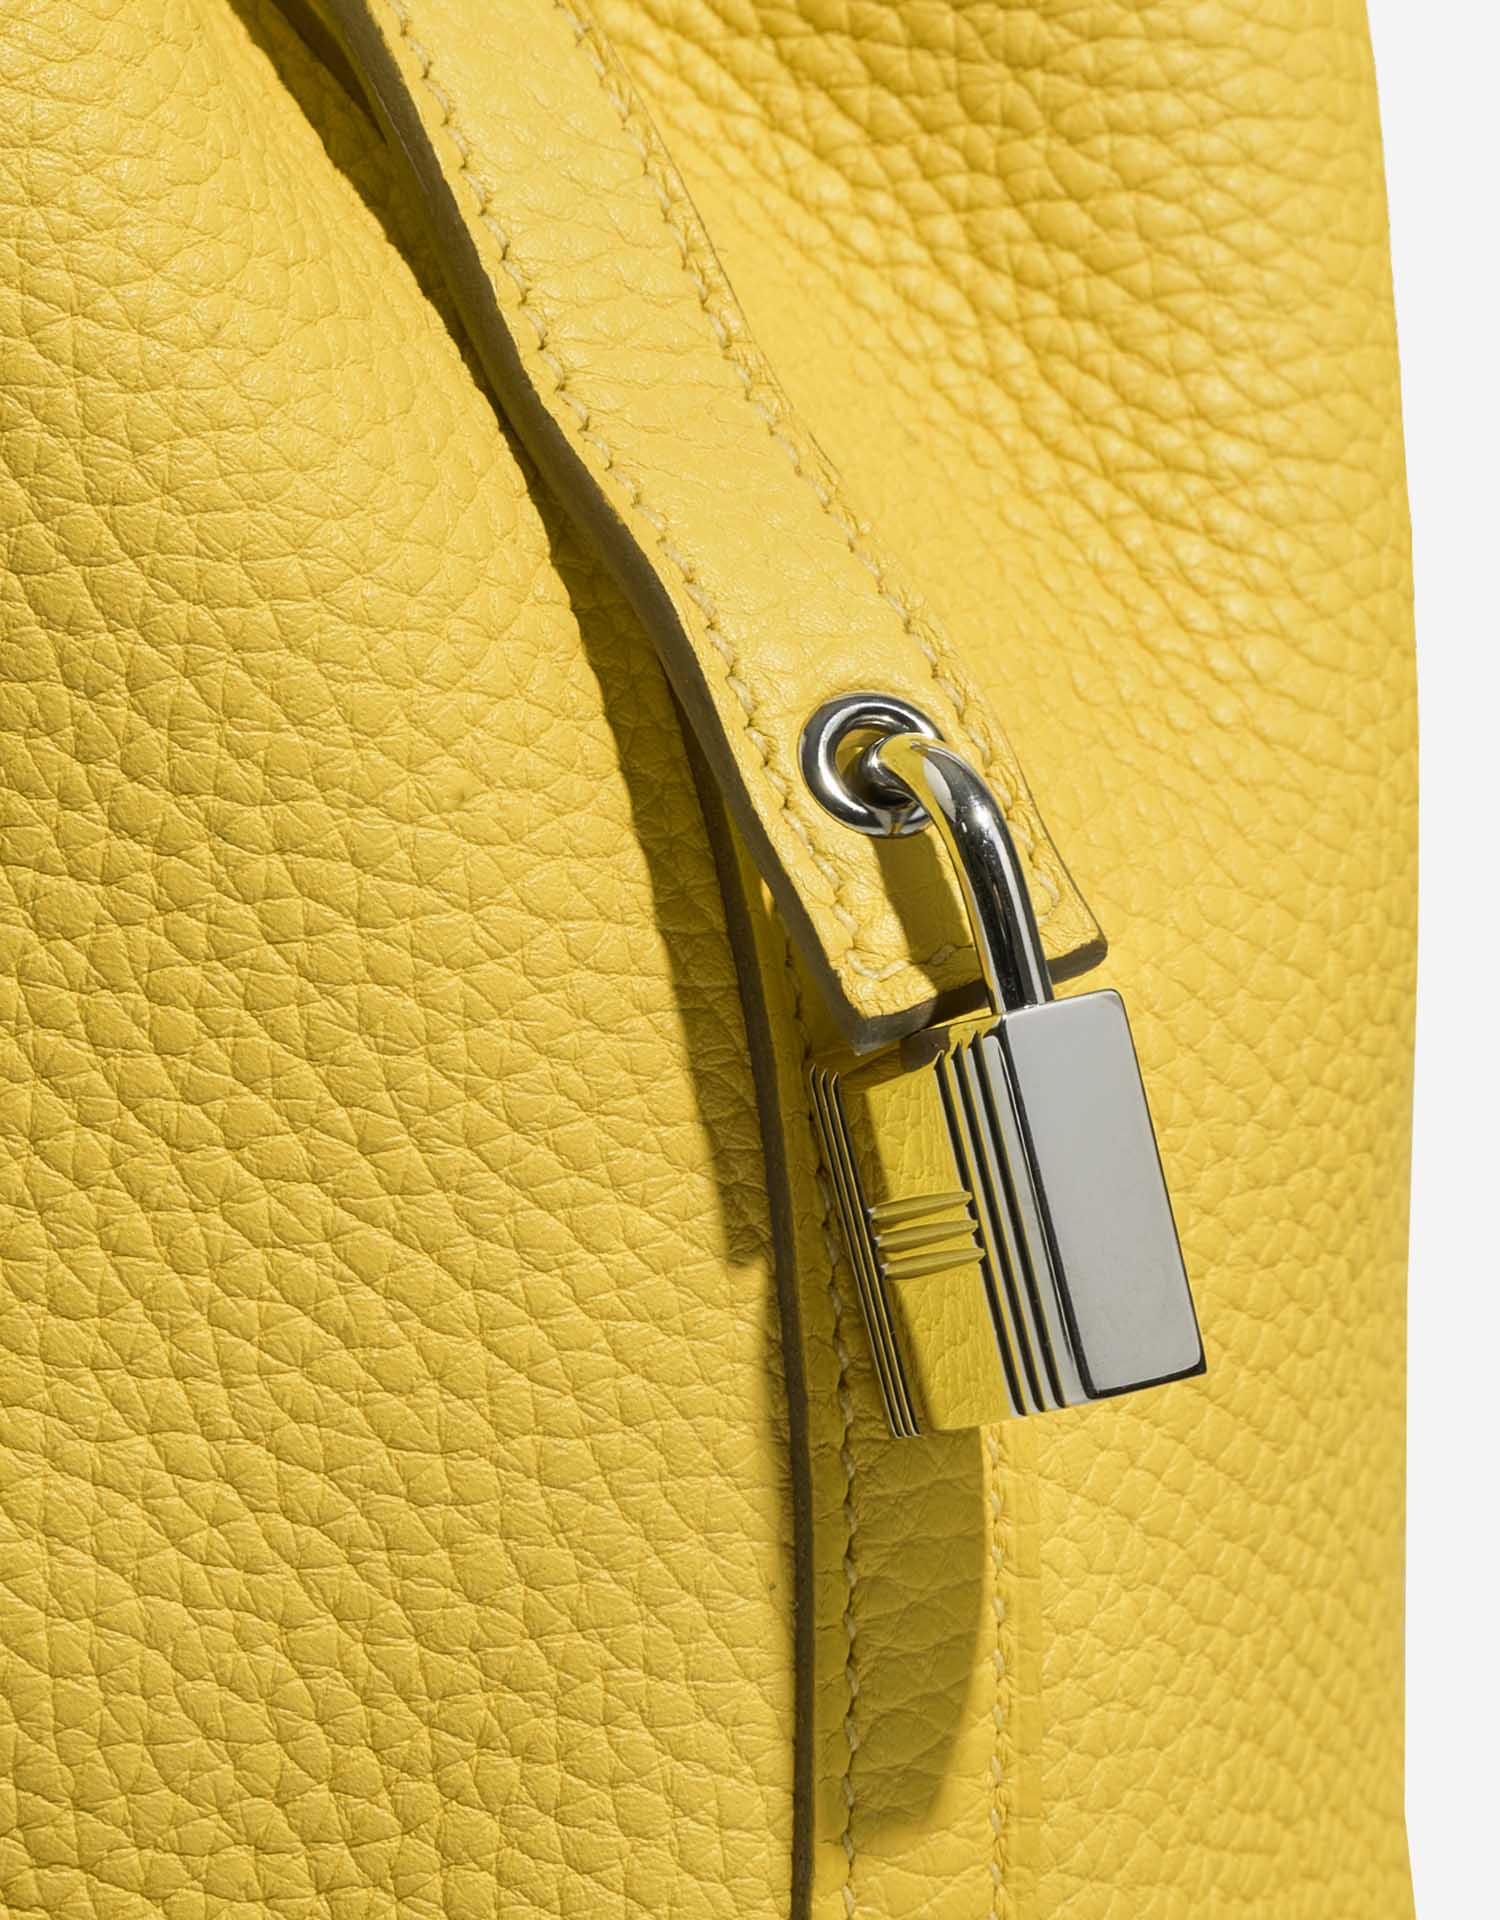 Hermès Picotin 18 Lime Closing System | Verkaufen Sie Ihre Designer-Tasche auf Saclab.com